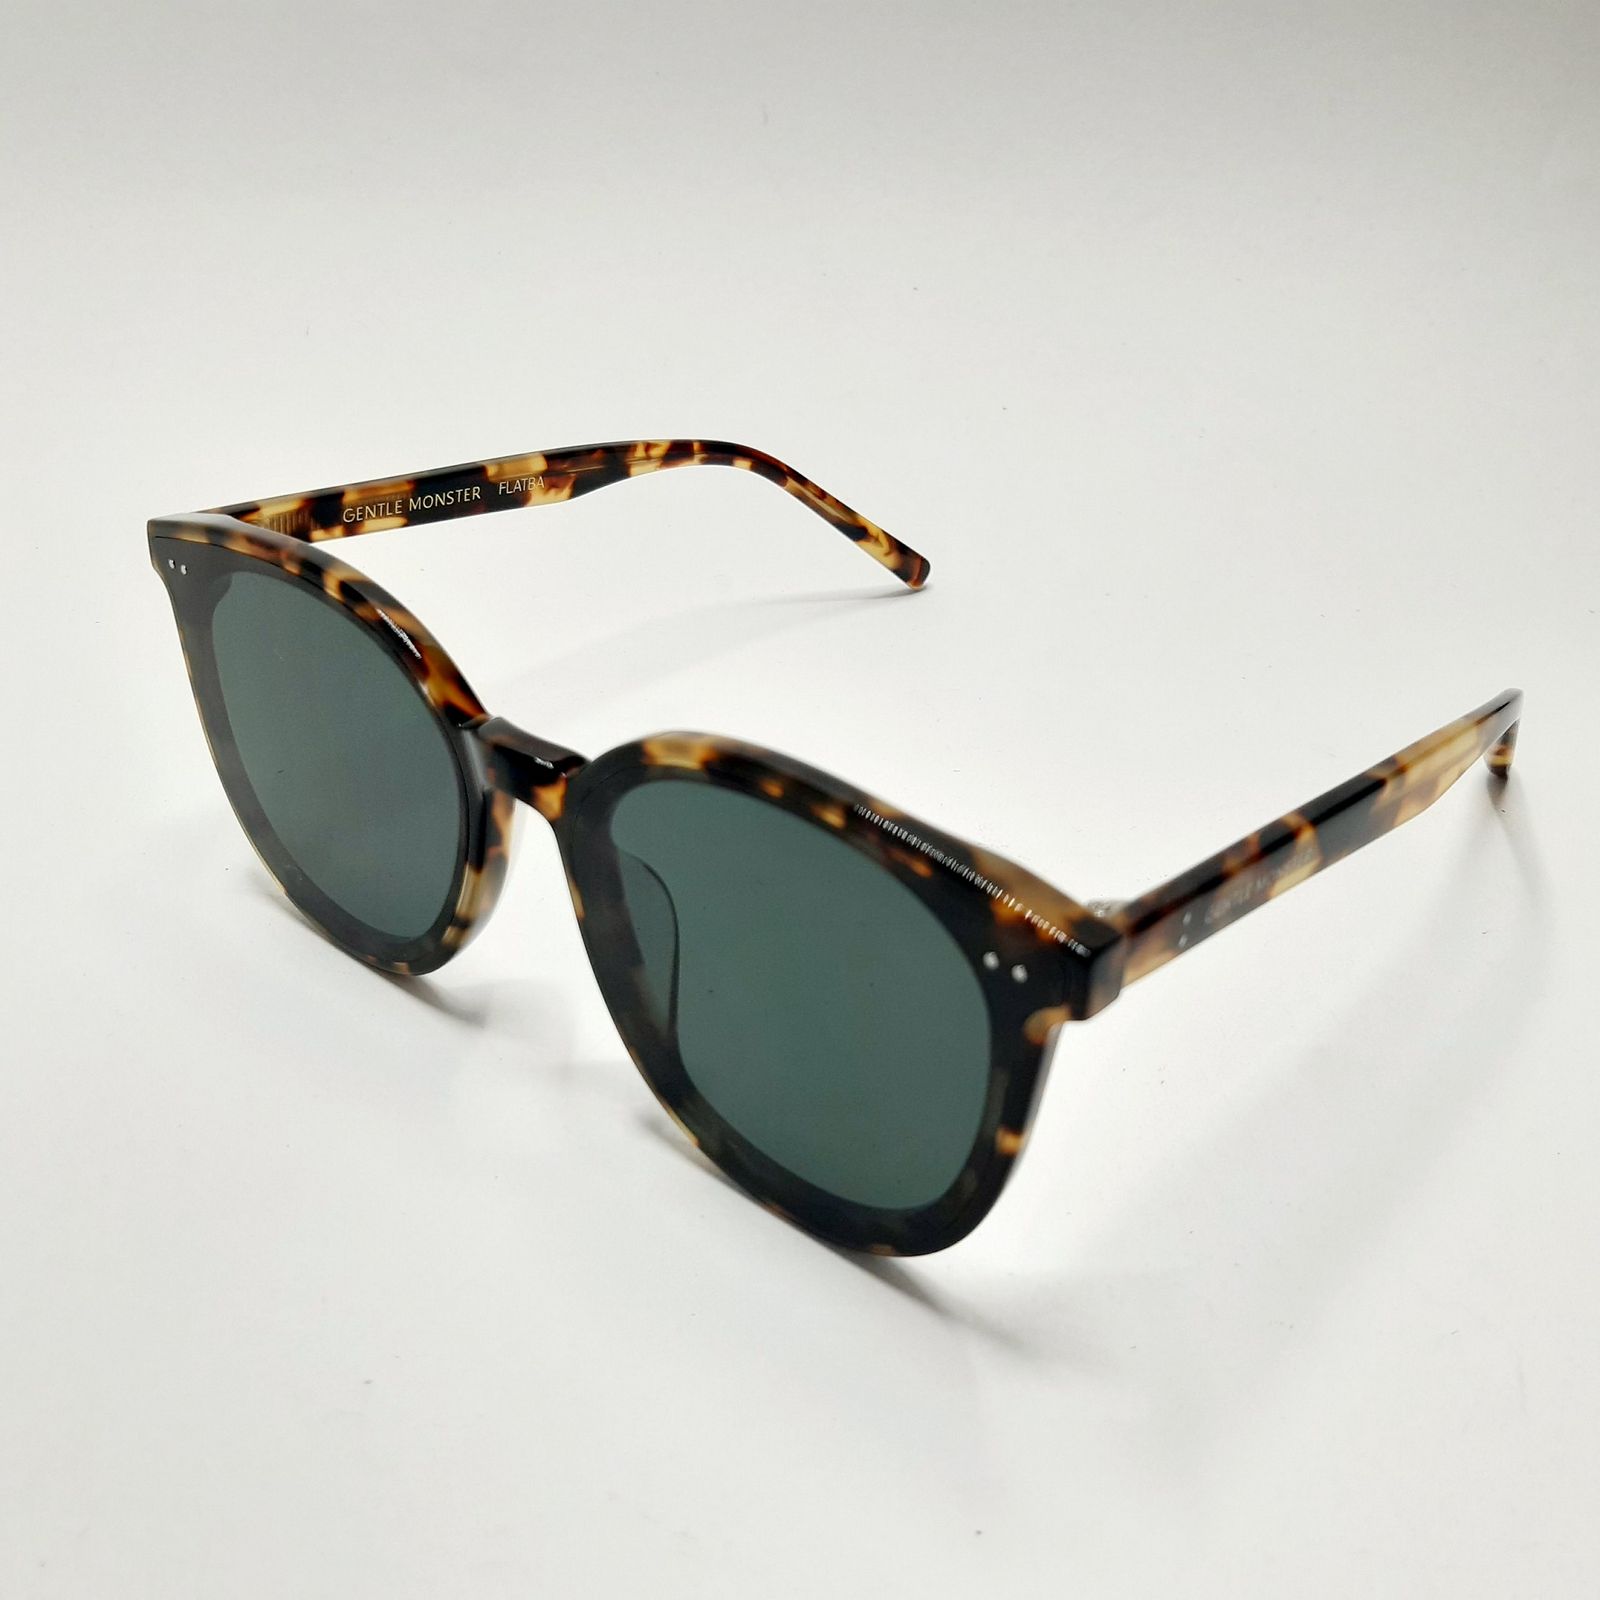 عینک آفتابی زنانه جنتل مانستر مدل SOLOc02 -  - 4